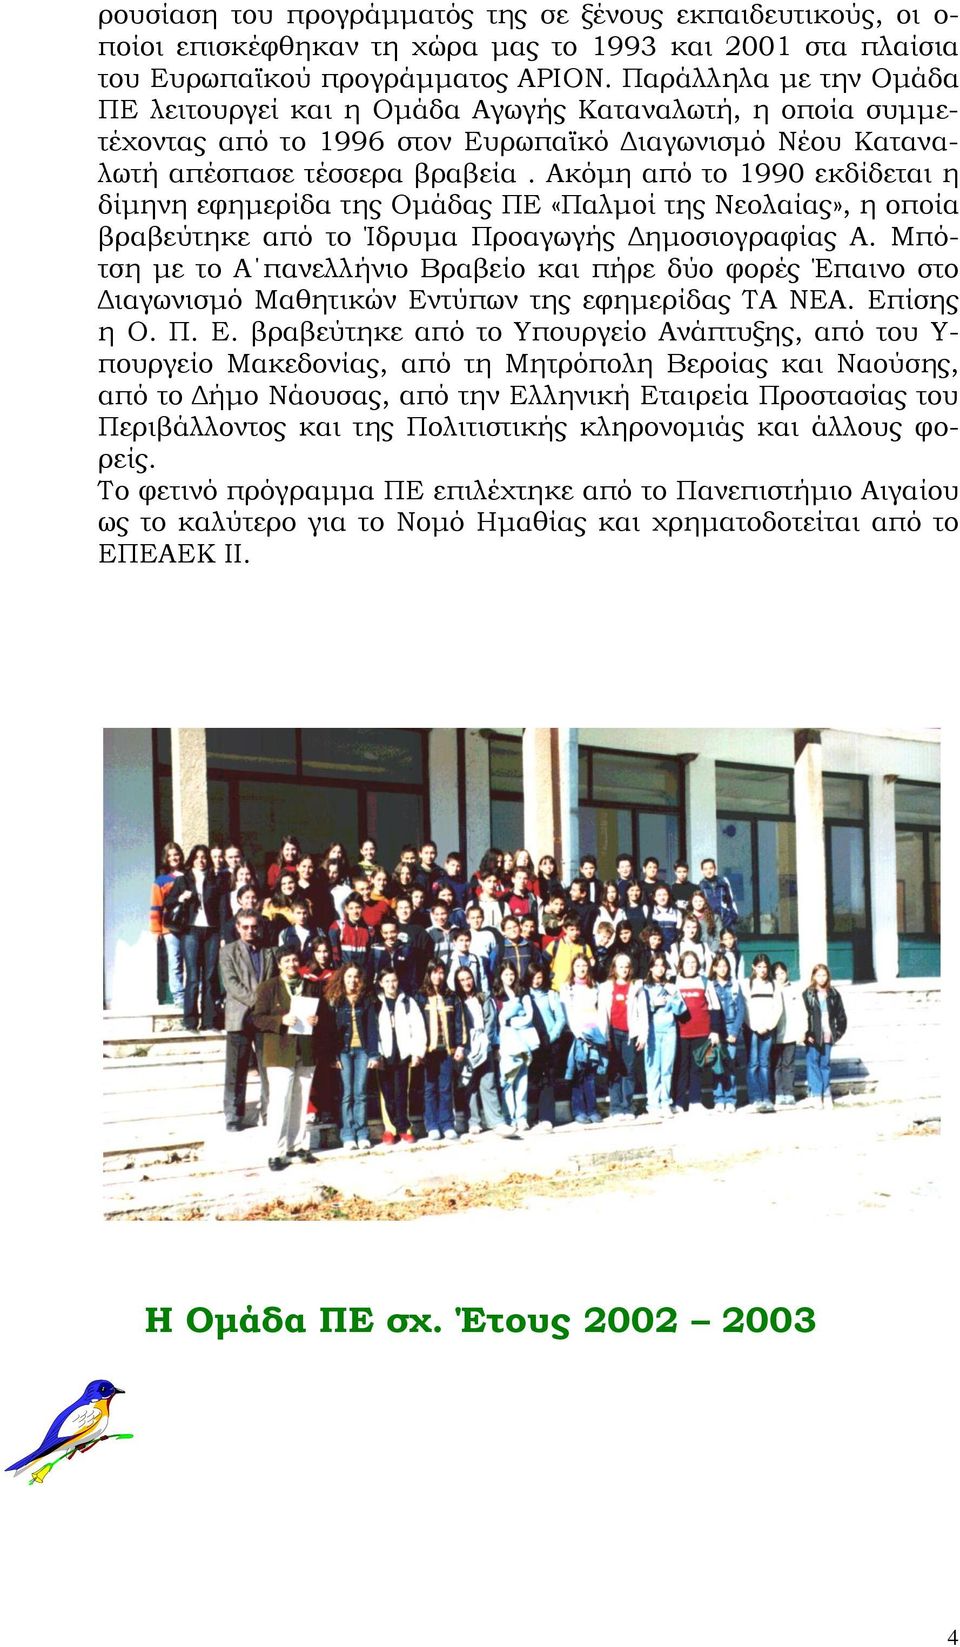 Ακόμη από το 1990 εκδίδεται η δίμηνη εφημερίδα της Ομάδας ΠΕ «Παλμοί της Νεολαίας», η οποία βραβεύτηκε από το Ίδρυμα Προαγωγής Δημοσιογραφίας Α.